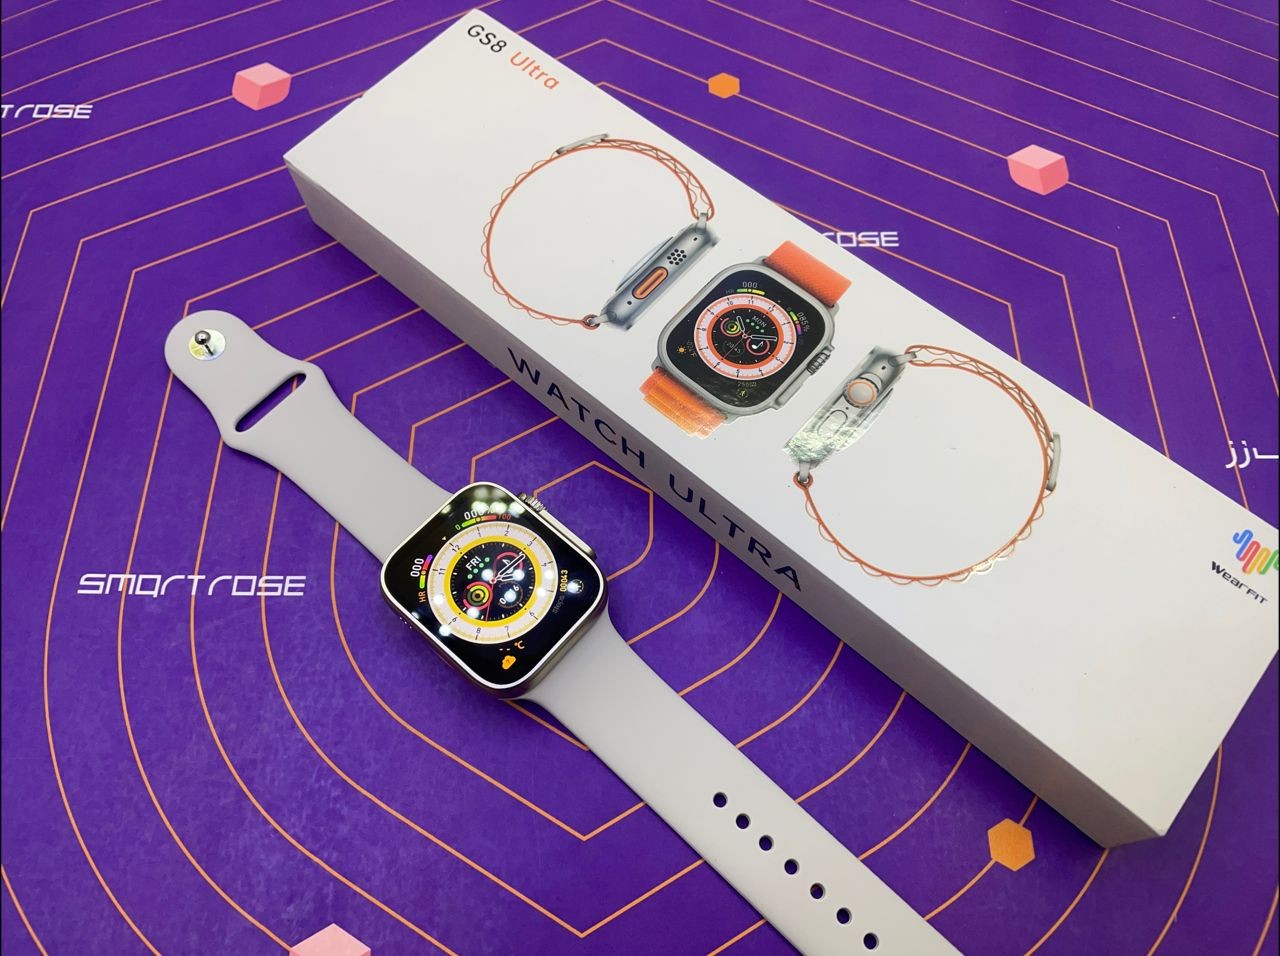 ساعت هوشمند طرح اپل واچ اولترا مدل GS8 ULTRA اصلی و با گارانتی 1 ساله اسمارت رز + هدیه